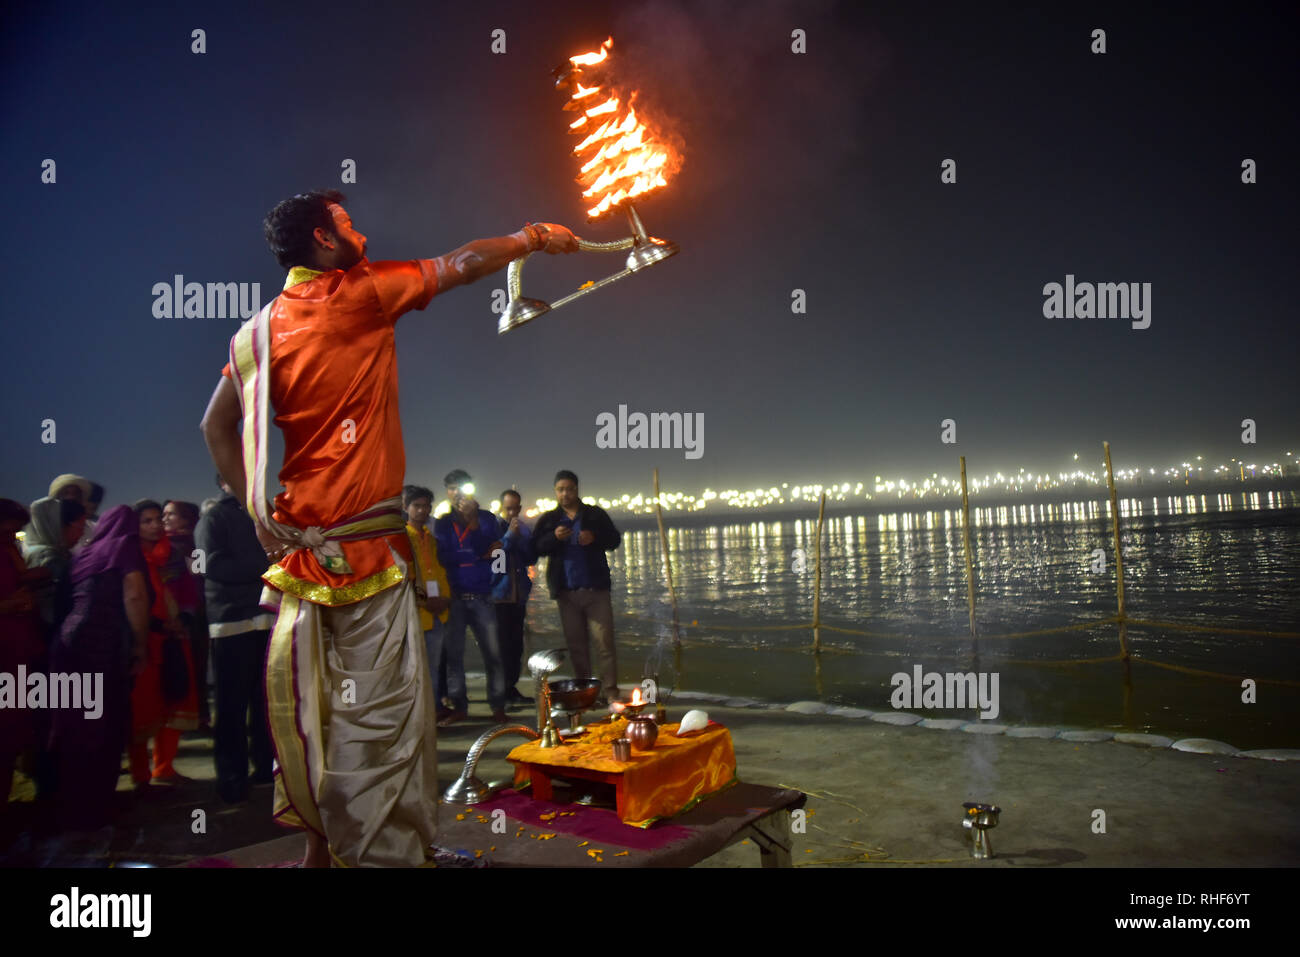 Pandit gesehen tun Ganga Aarti während der Wallfahrt. Kumbh Mela, einer der größten Gemeinde des Menschen auf der Erde. Lacs von Menschen werden erwartet am Tag der zweiten Shahi Snan am 4. Februar und Arrangements sind entsprechend in Prayagraj gemacht. Stockfoto